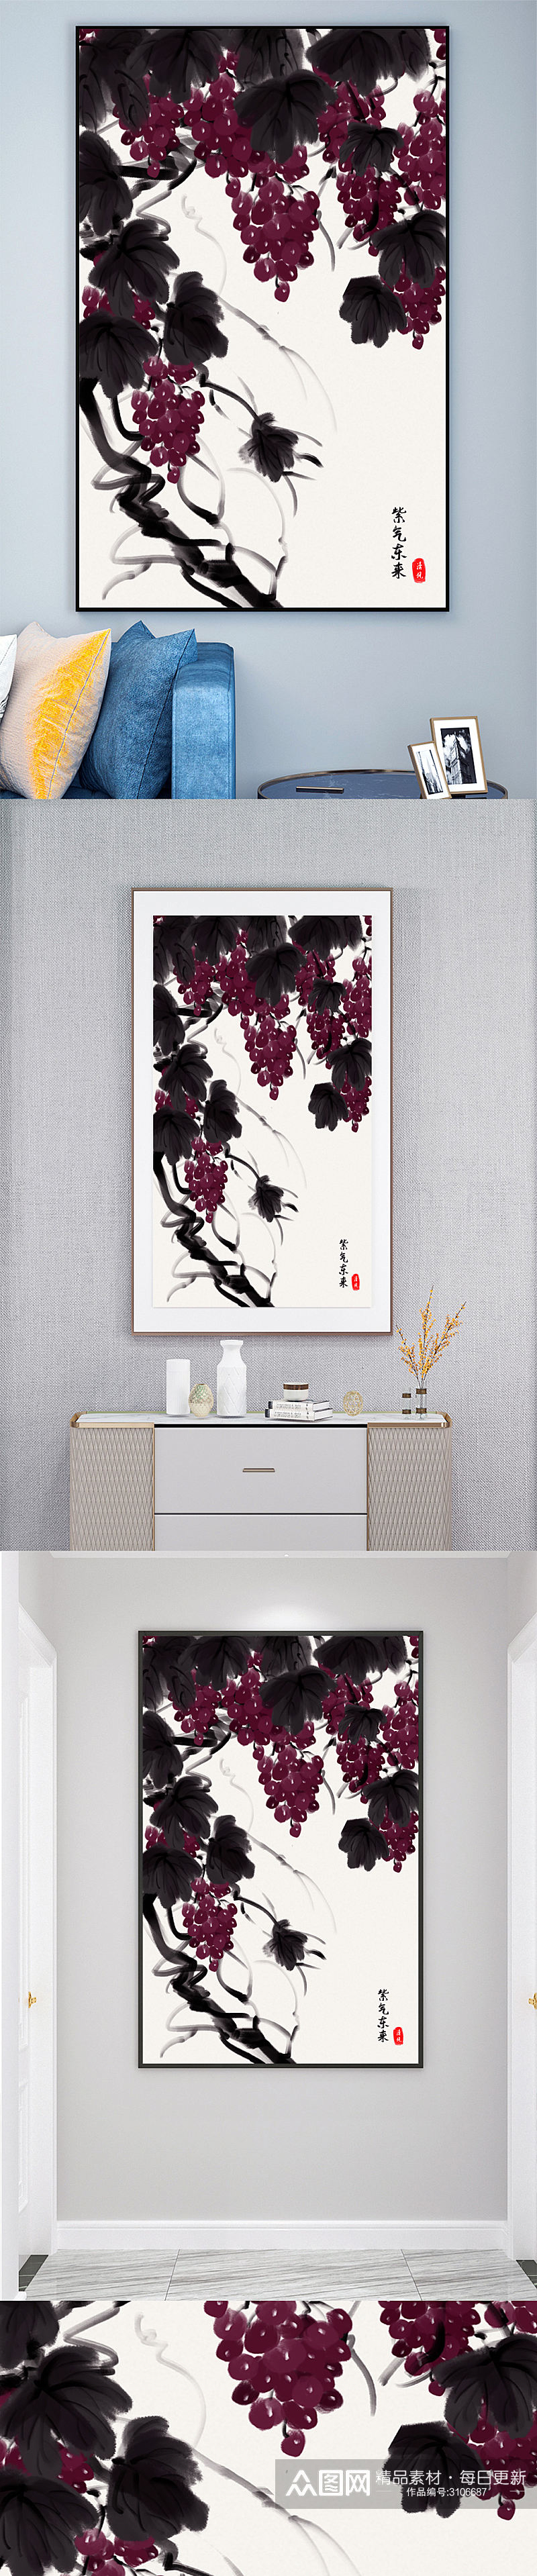 中国风葡萄水果装饰画壁画素材